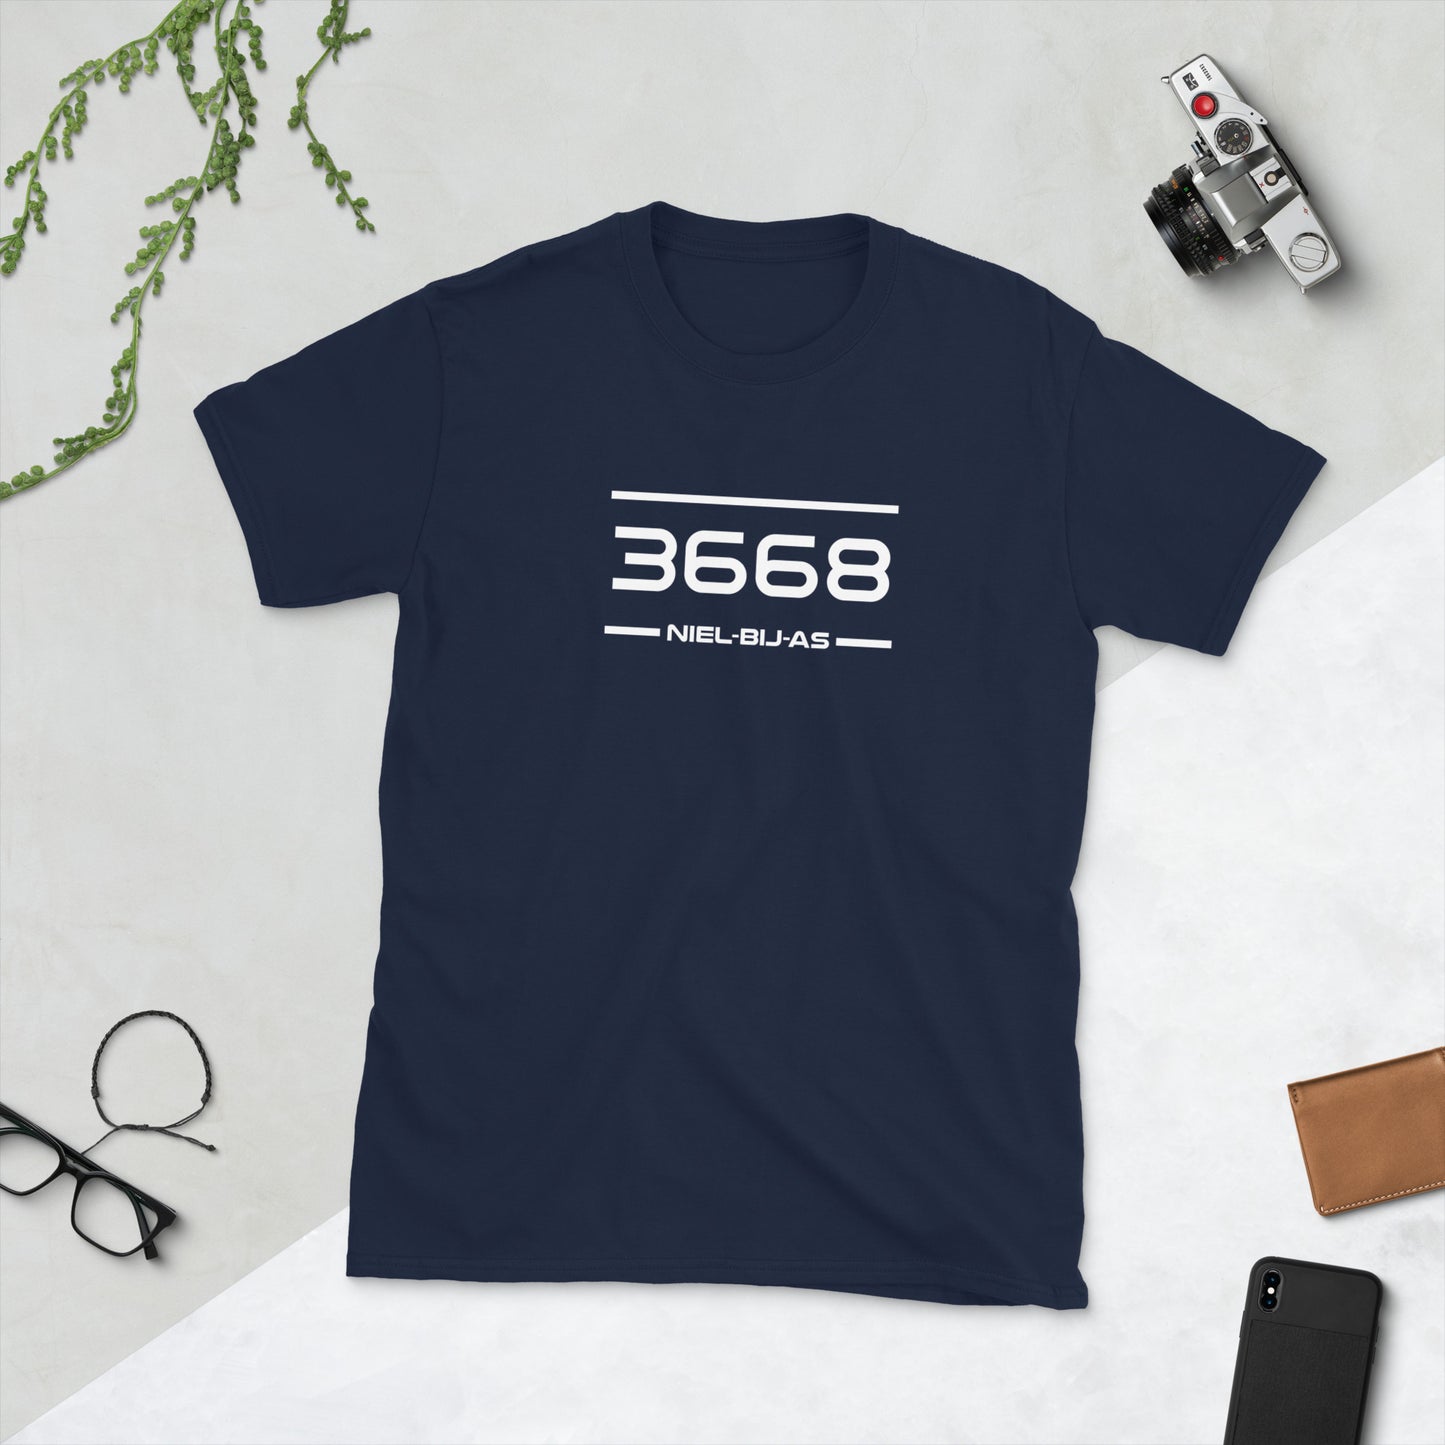 Tshirt - 3668 - Niel-Bij-As